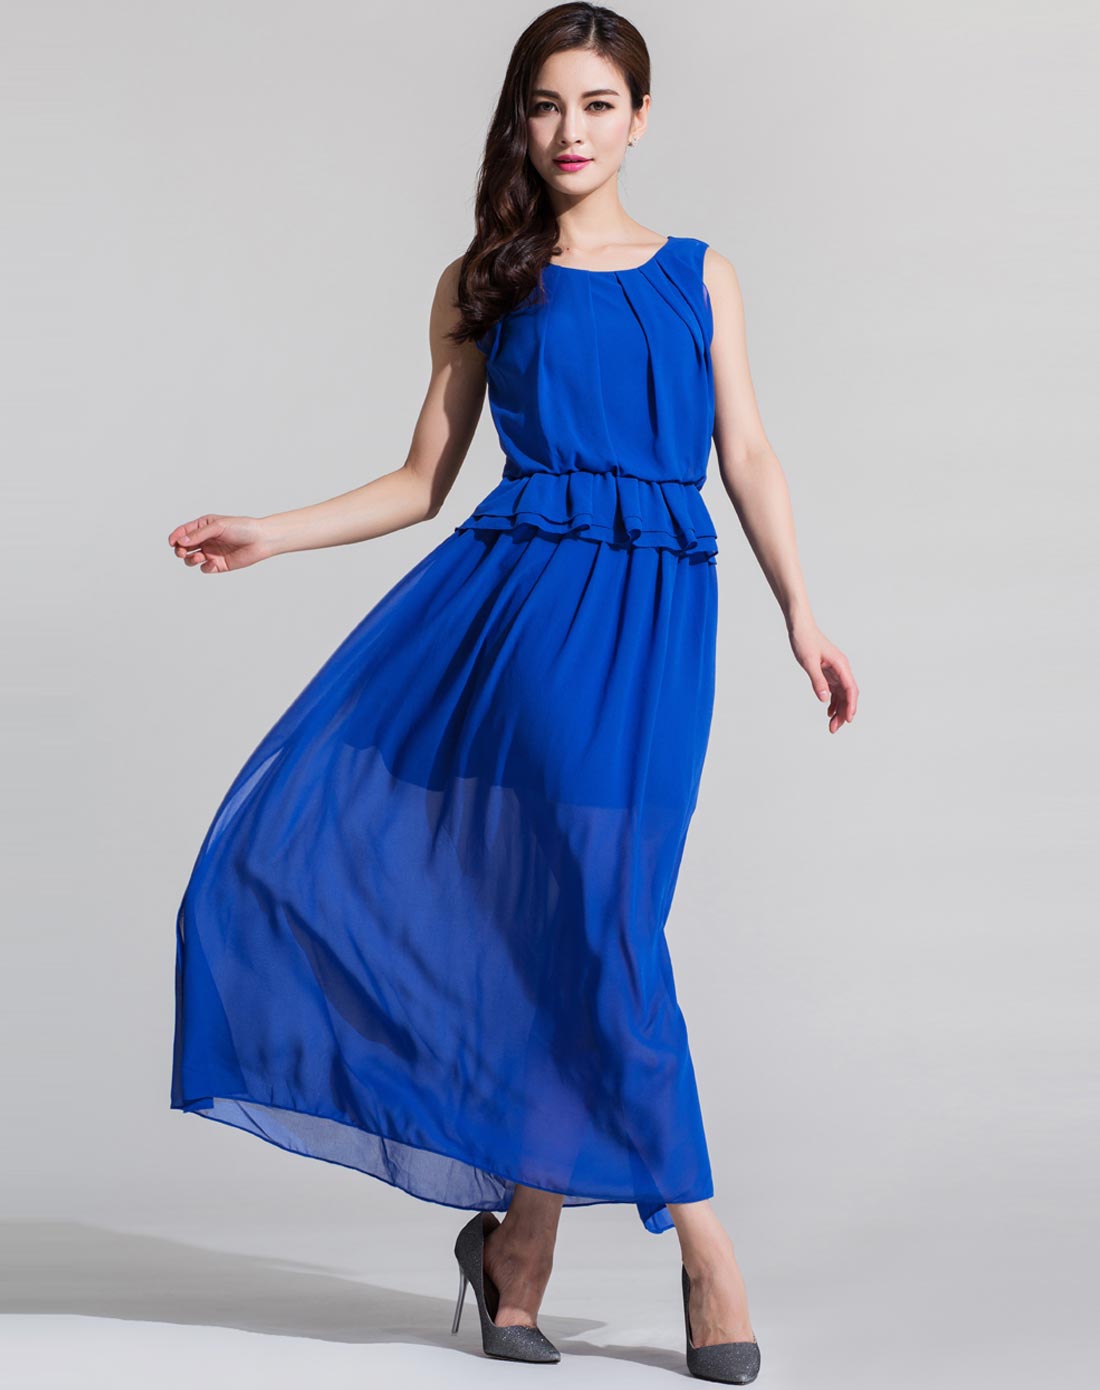 纯蓝色无袖时尚蓝色气质长裙